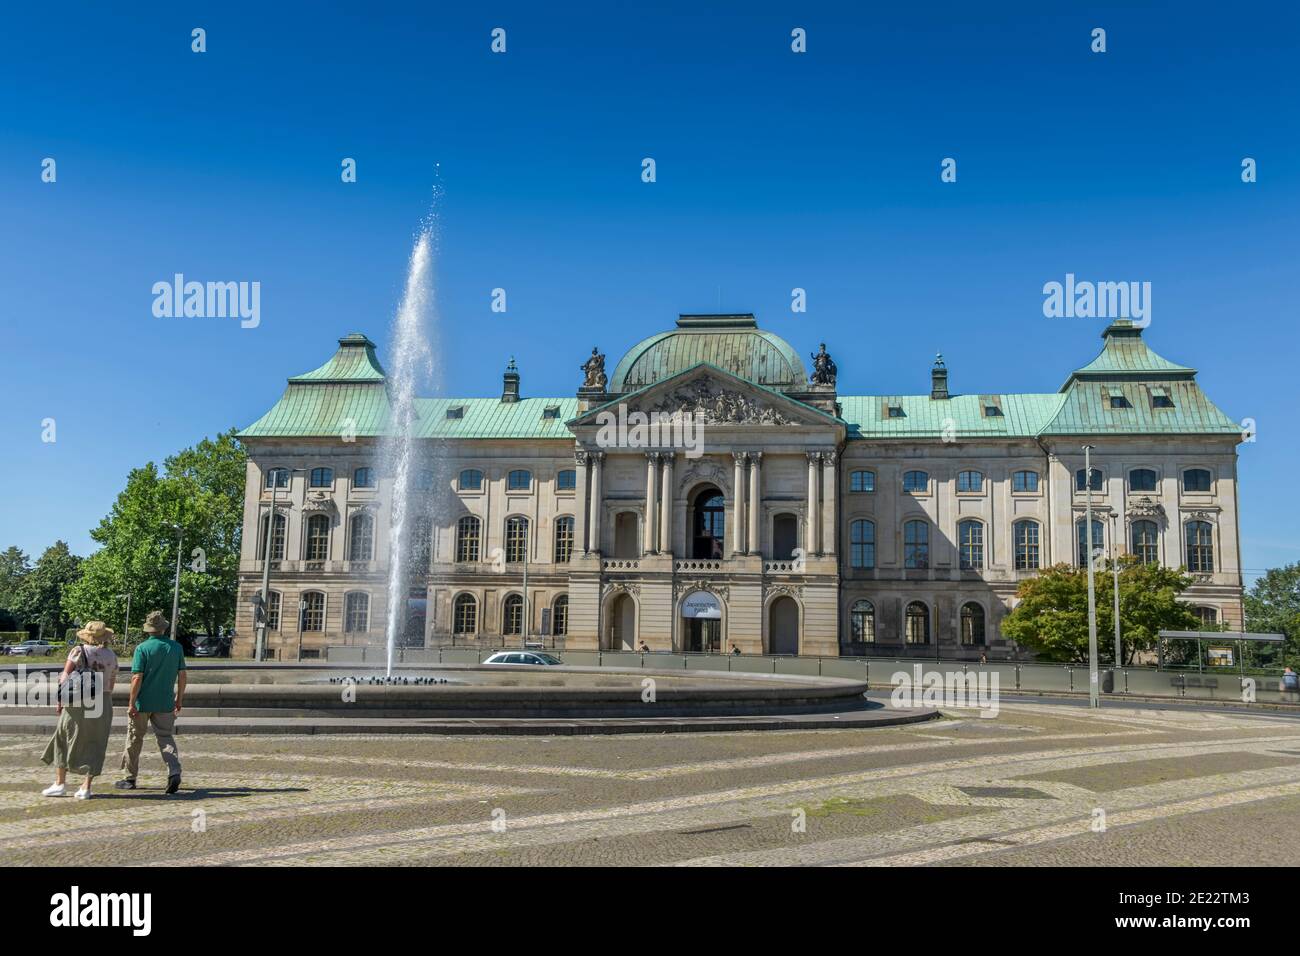 Japanisches Palais, Palaisplatz, Dresden, Sachsen, Deutschland Stock Photo